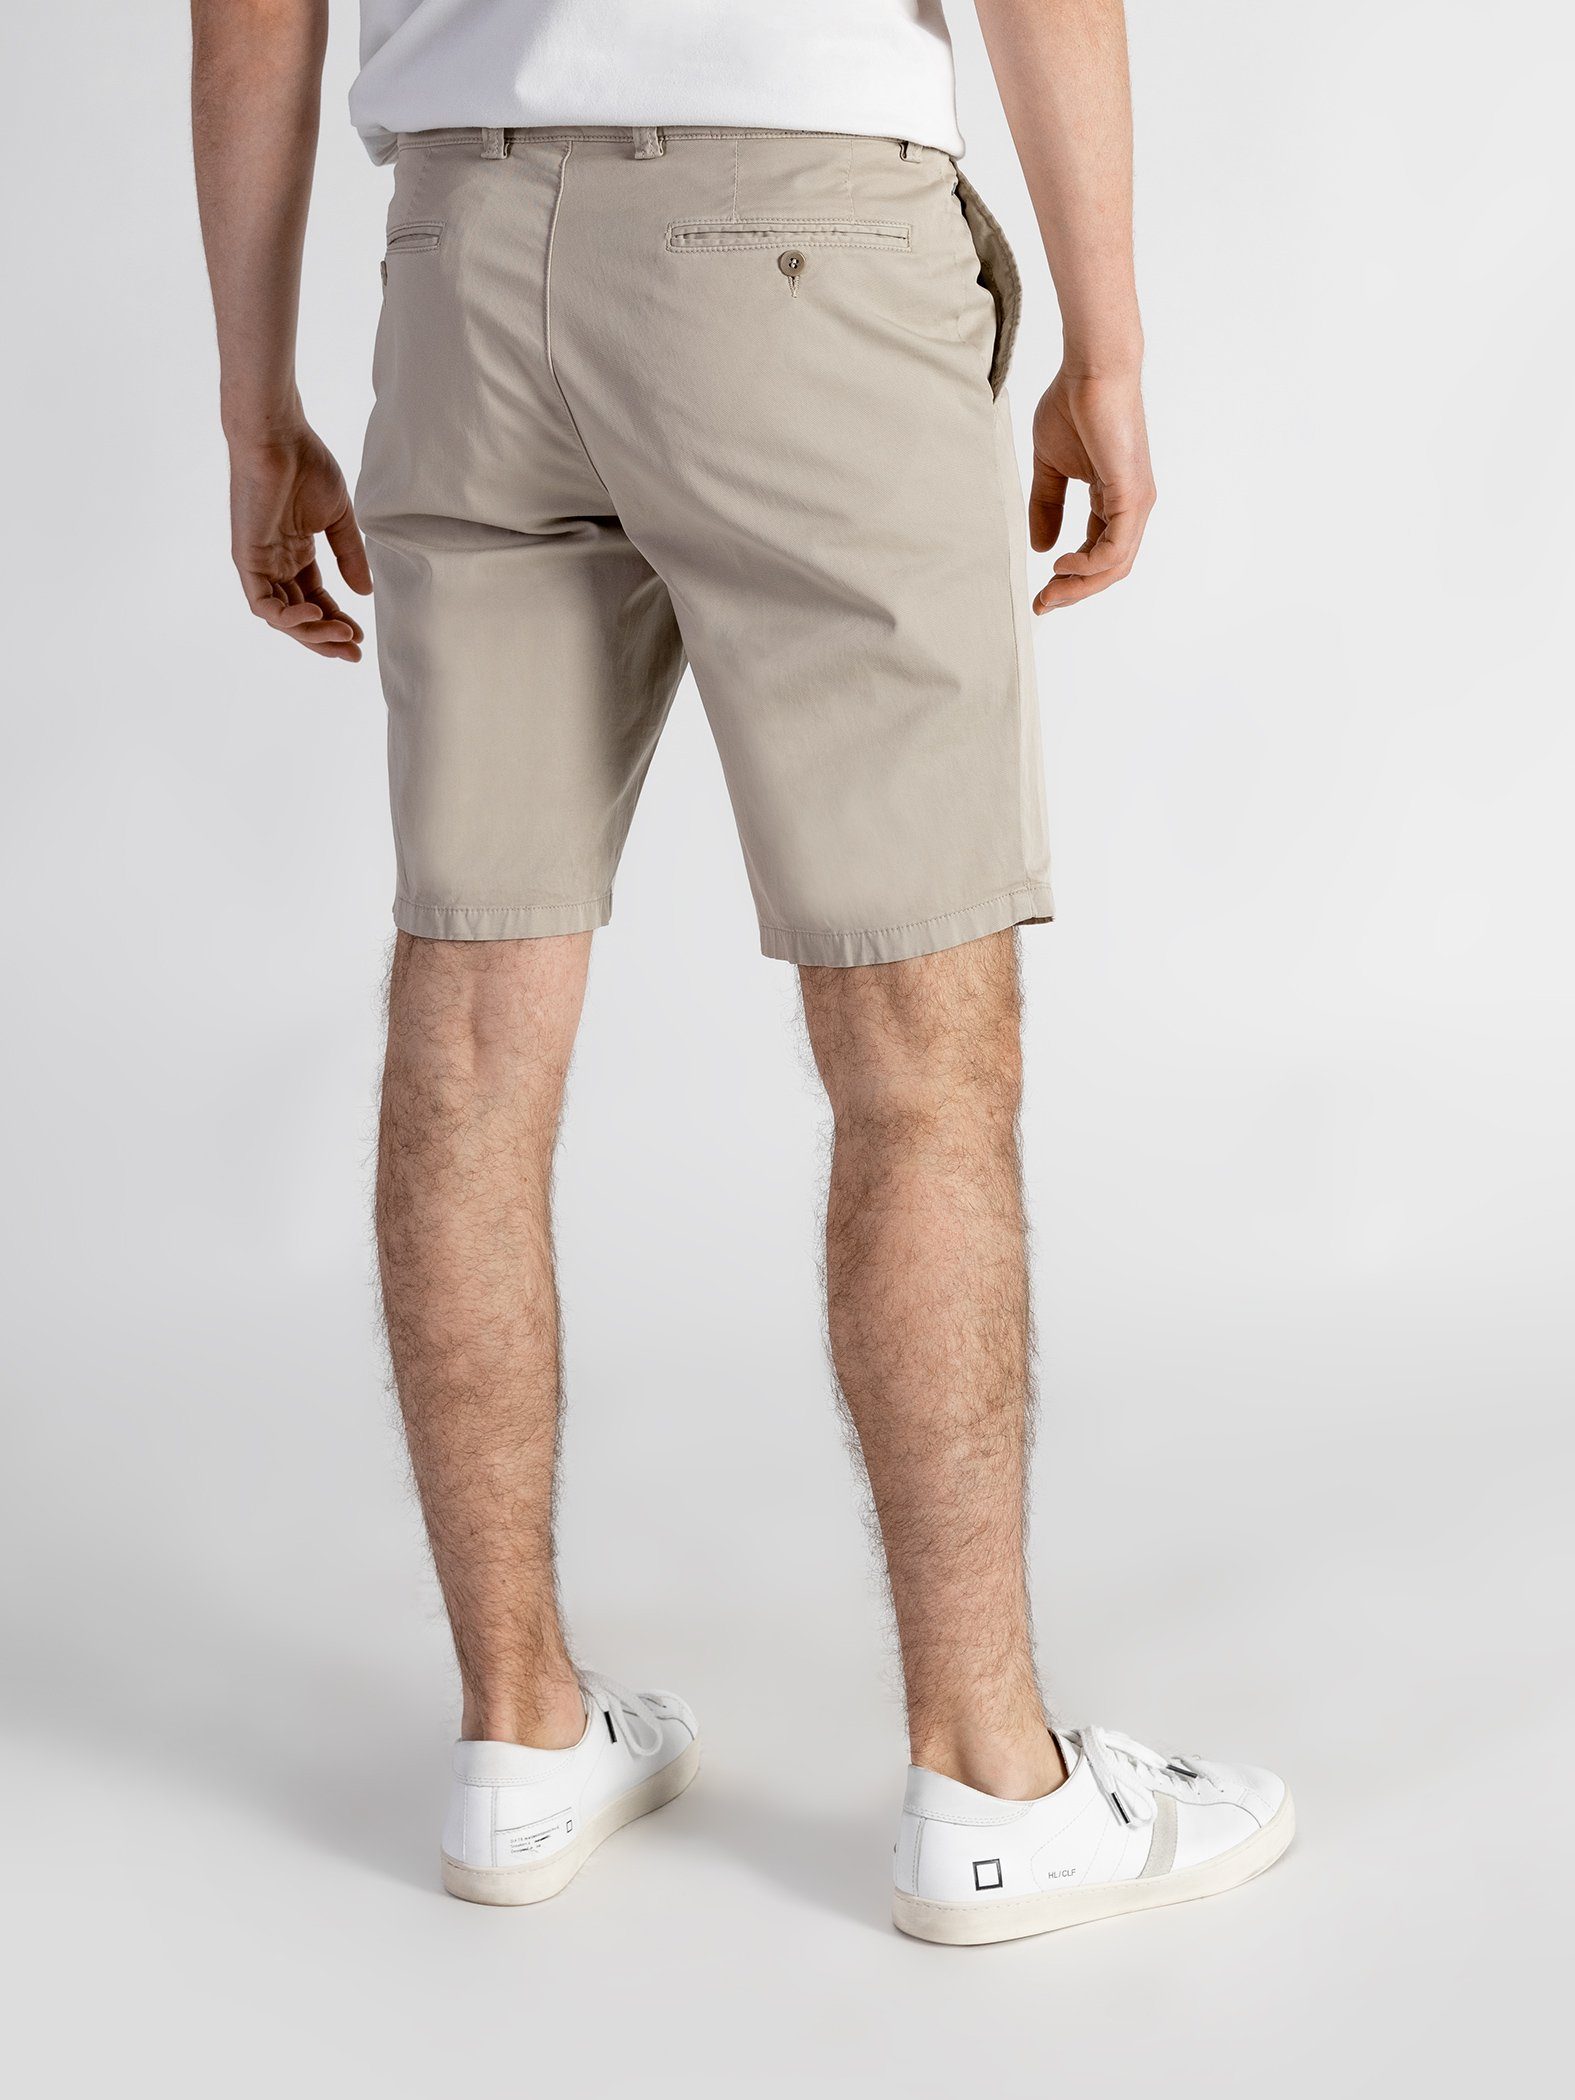 TwoMates Shorts Shorts mit GOTS-zertifiziert Farbauswahl, elastischem sandbeige Bund